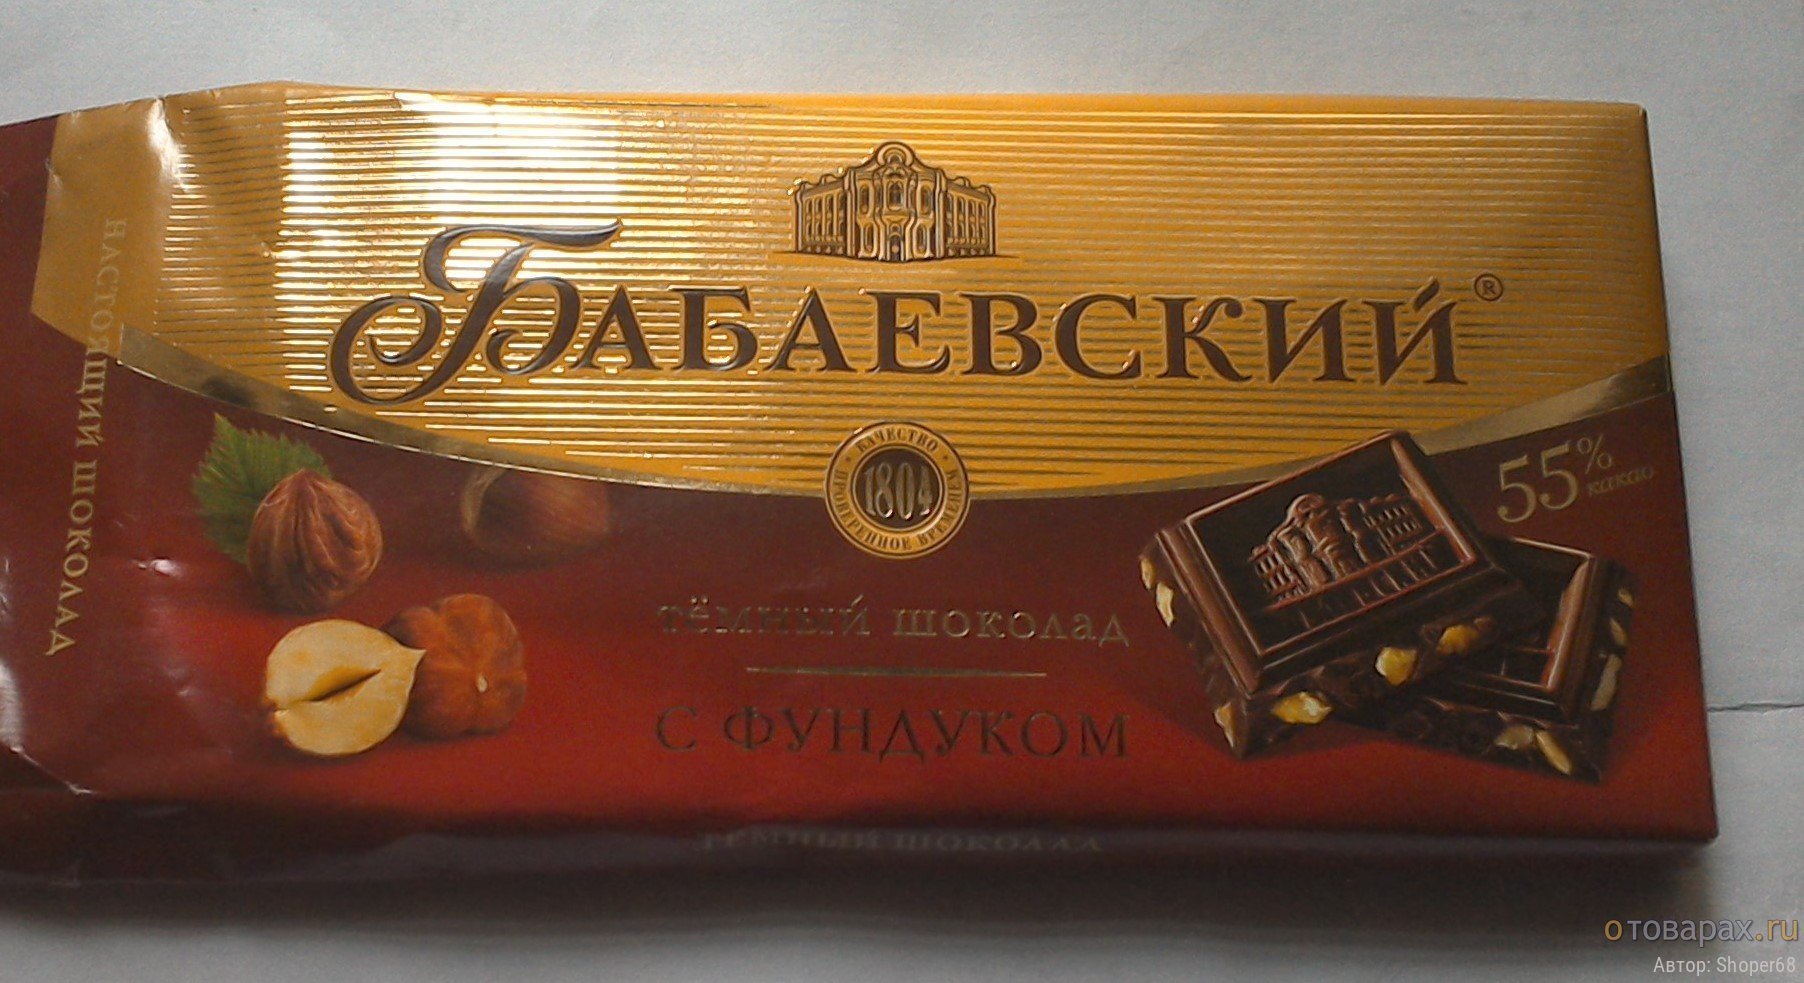 Шоколад с помадно-сливочной начинкой СССР